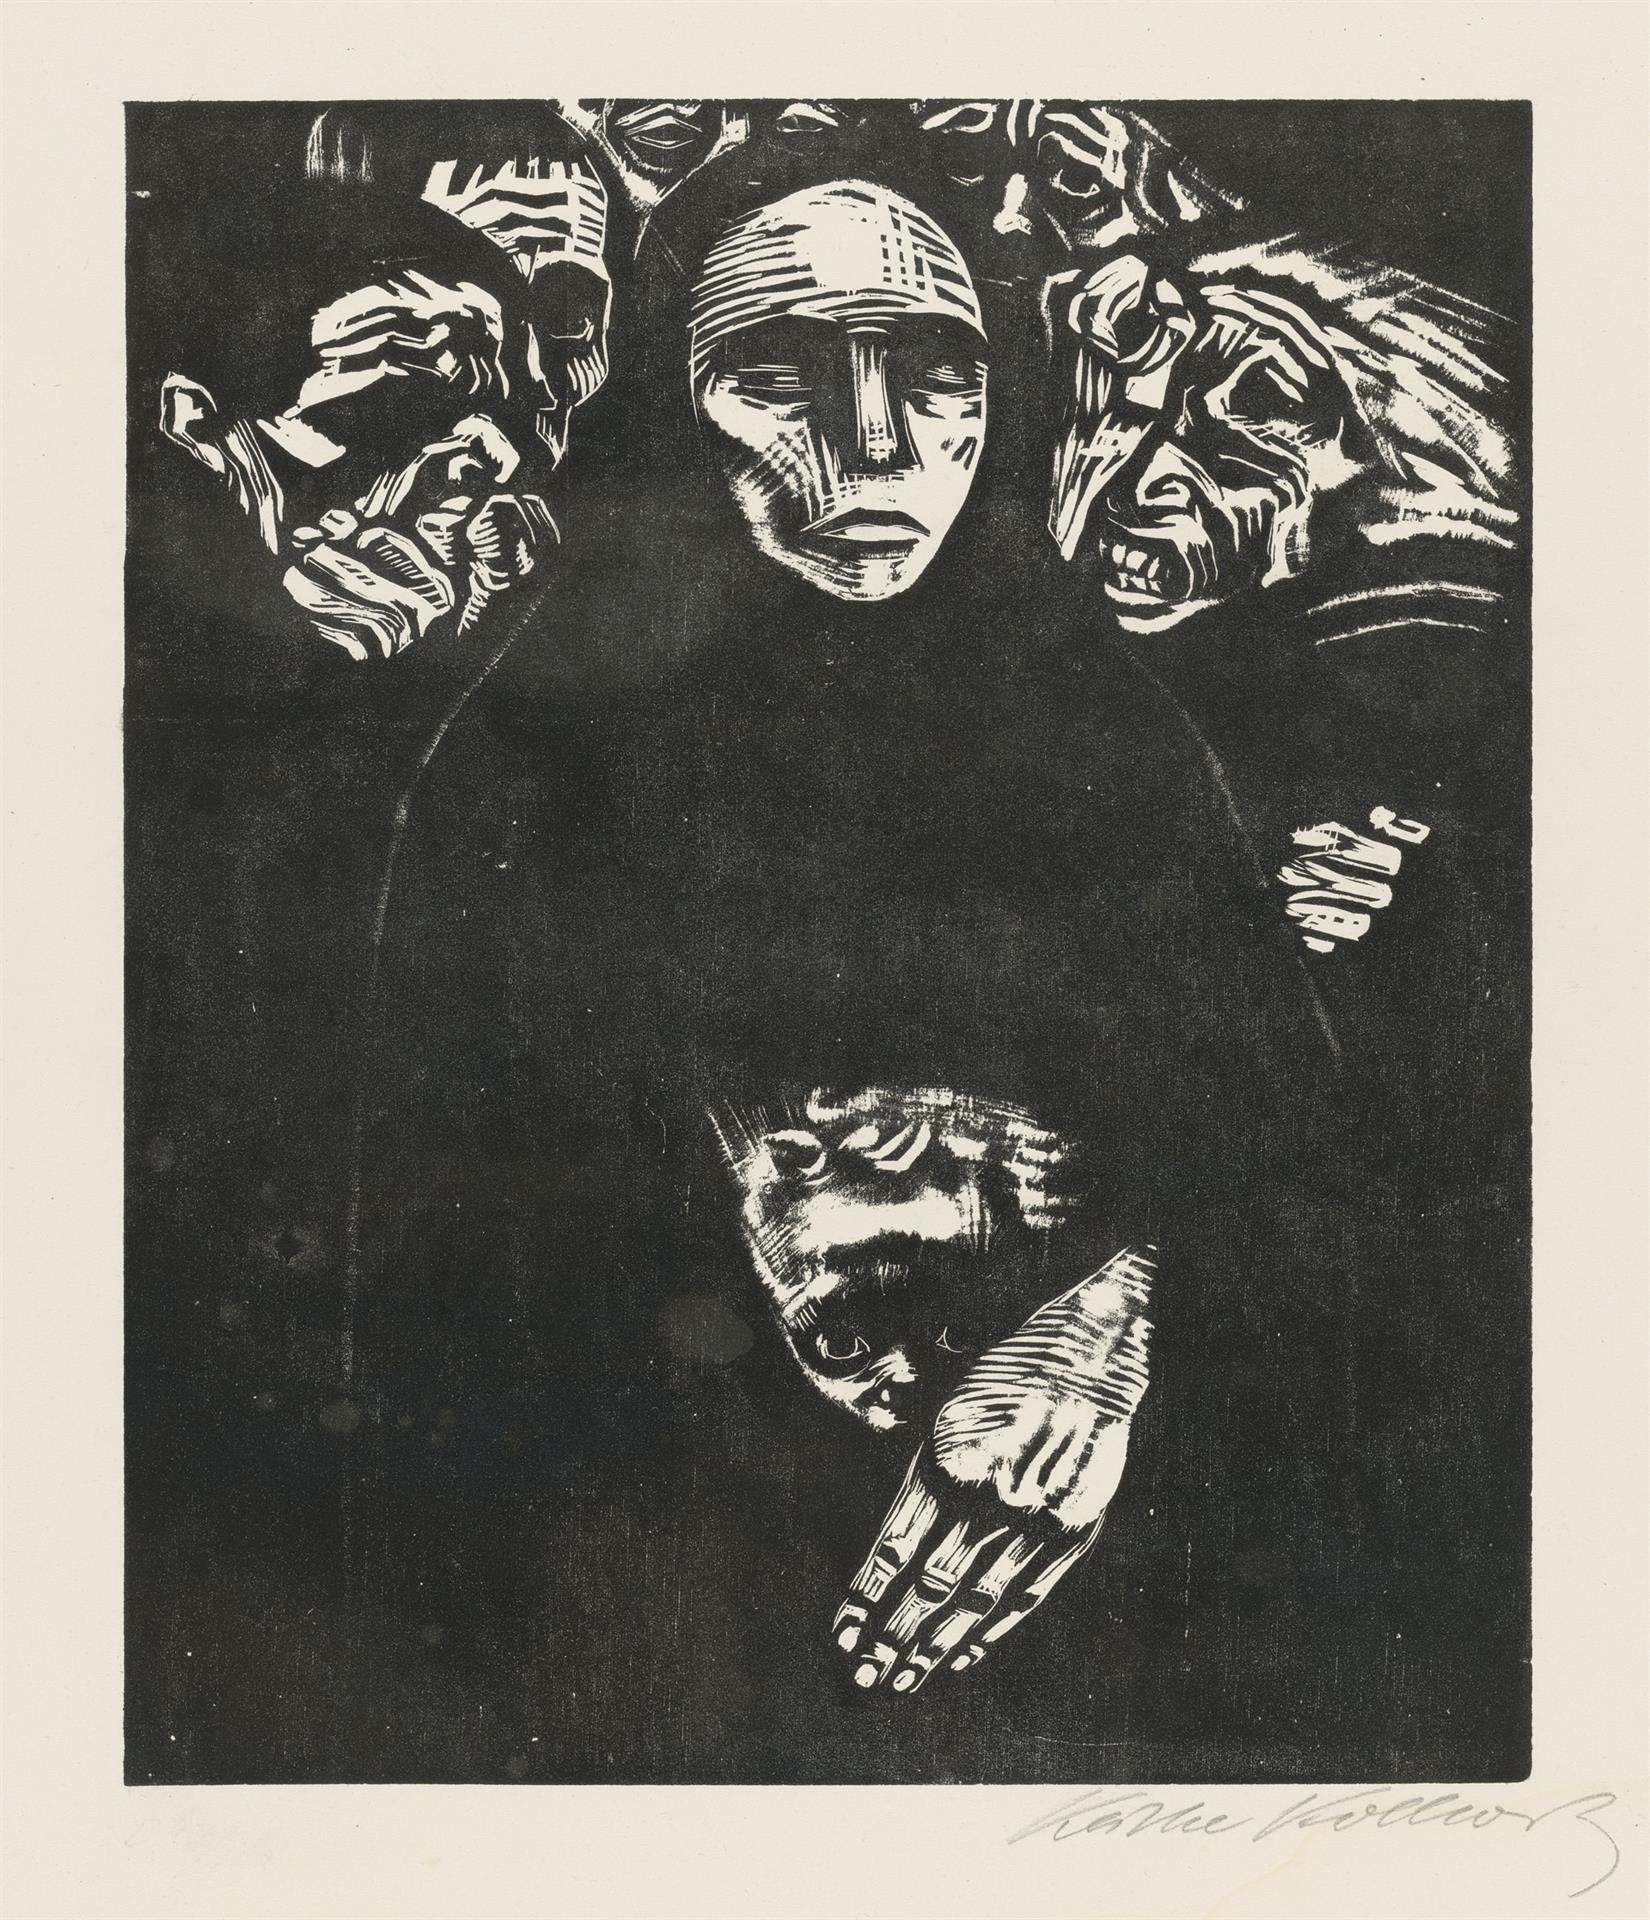 Käthe Kollwitz, Le Peuple, planche 7 de la série »Guerre«, 1922, gravure sur bois, Kn 190 VII, Collection Kollwitz de Cologne © Käthe Kollwitz Museum Köln